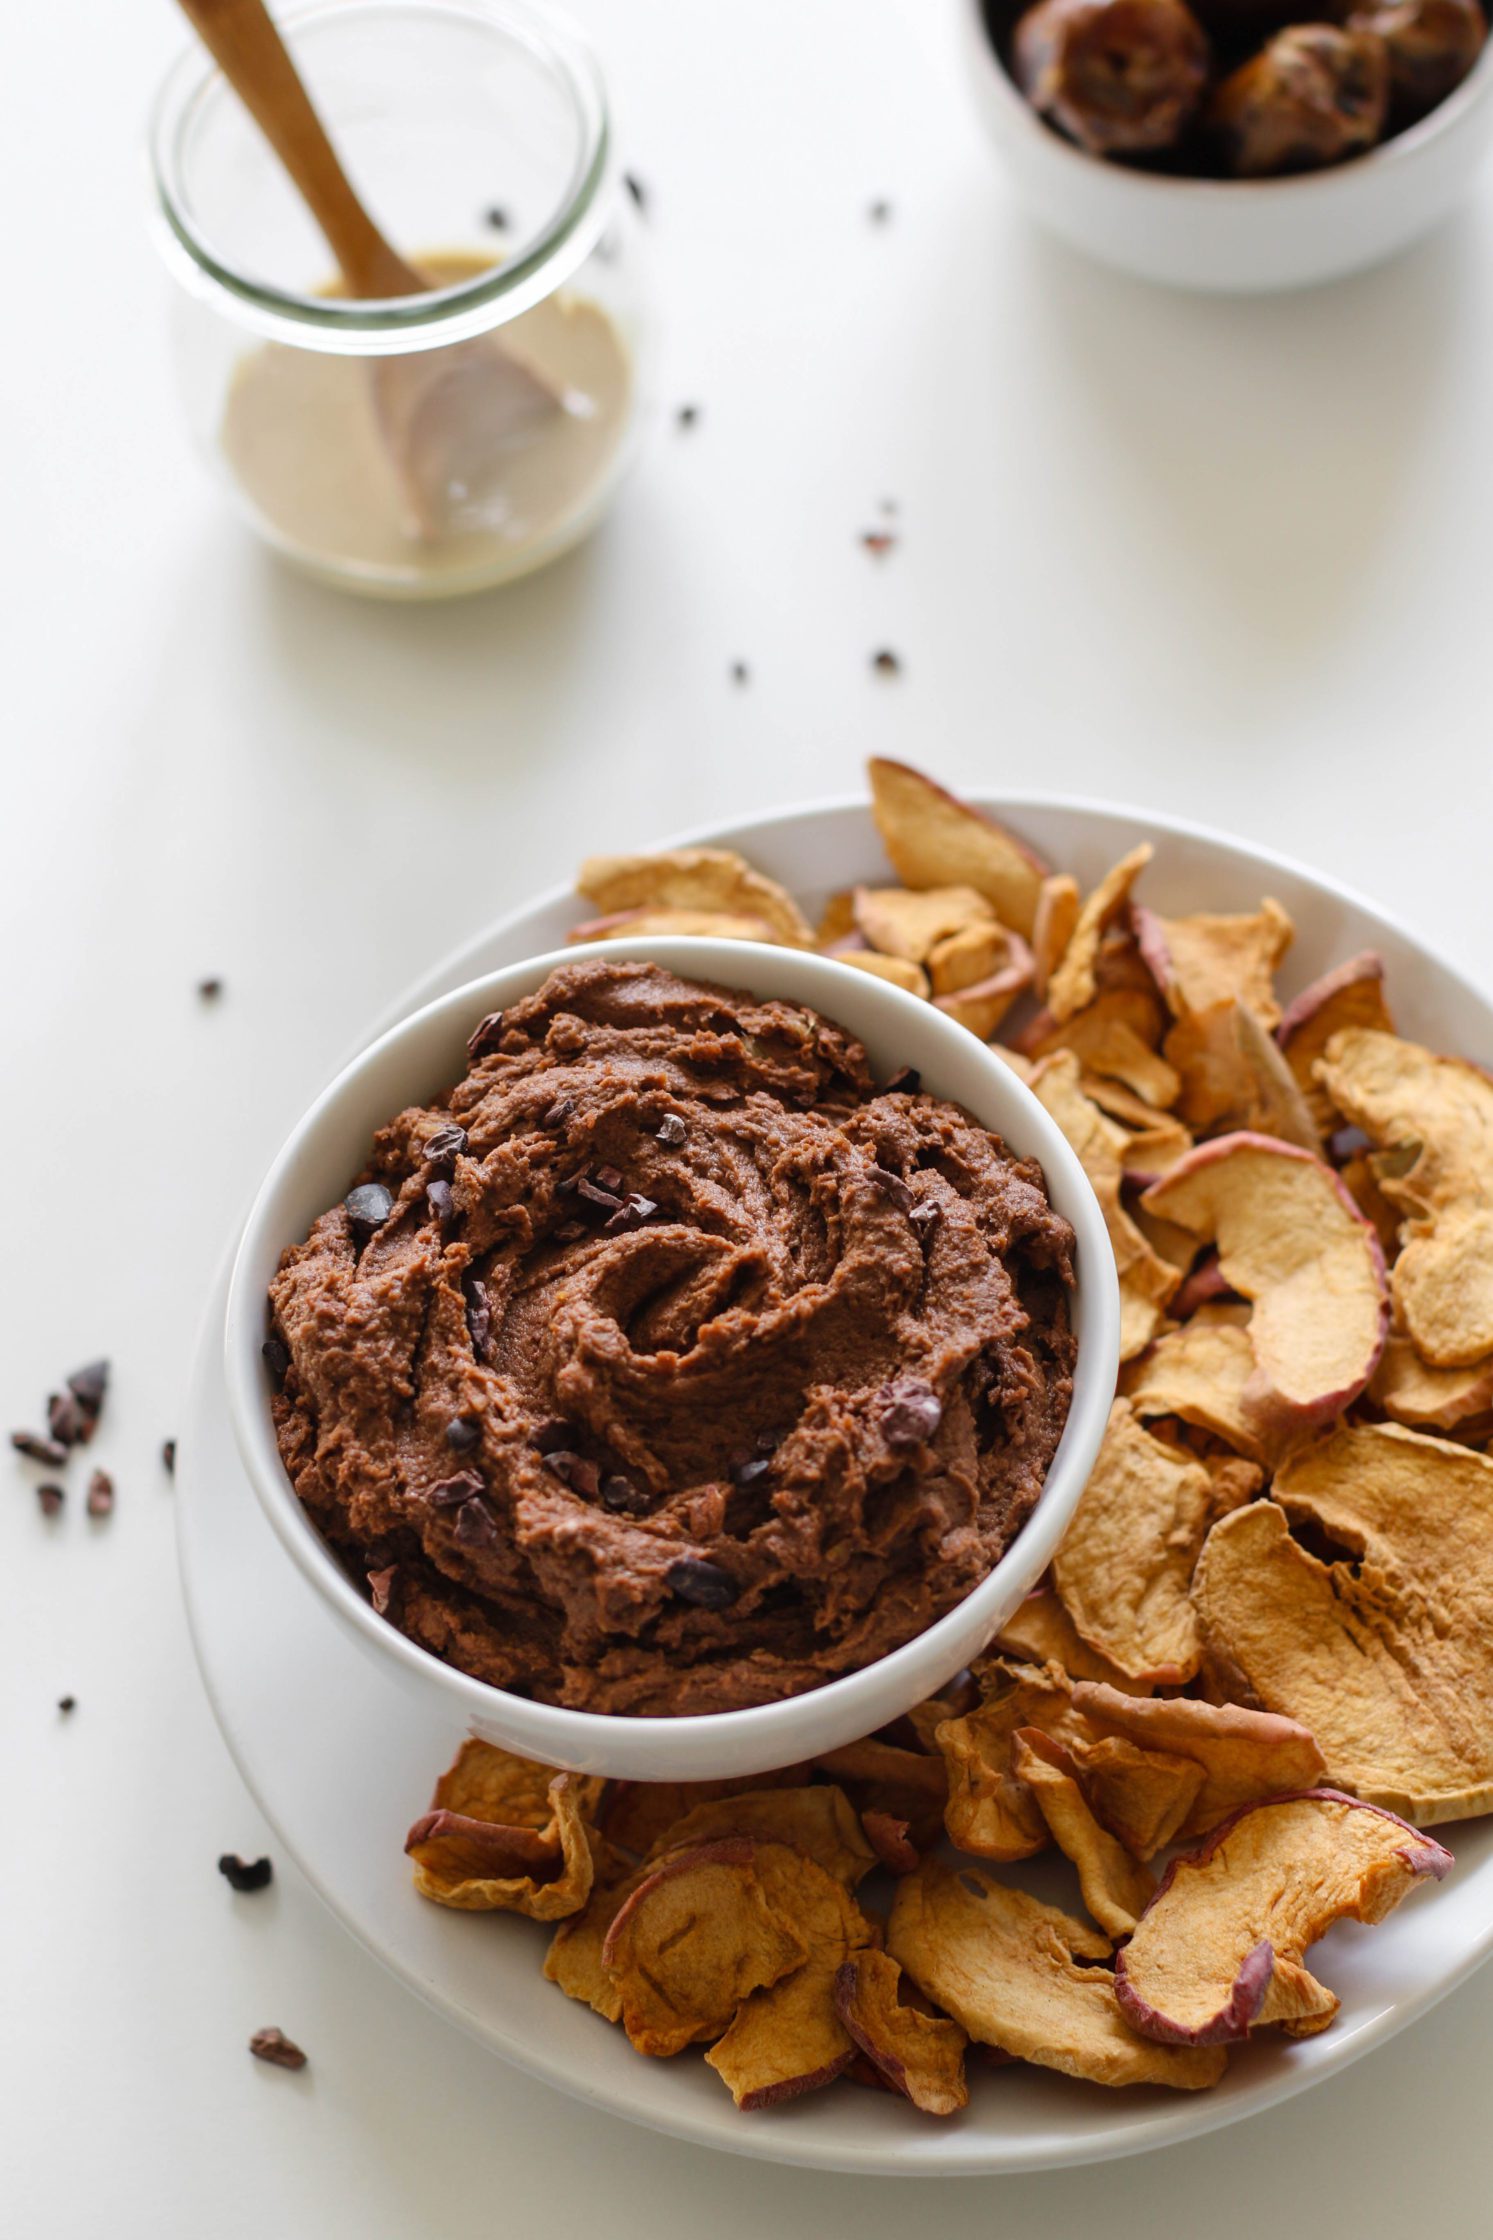 Date Sweetened Chocolate Hummus by Flora & Vino